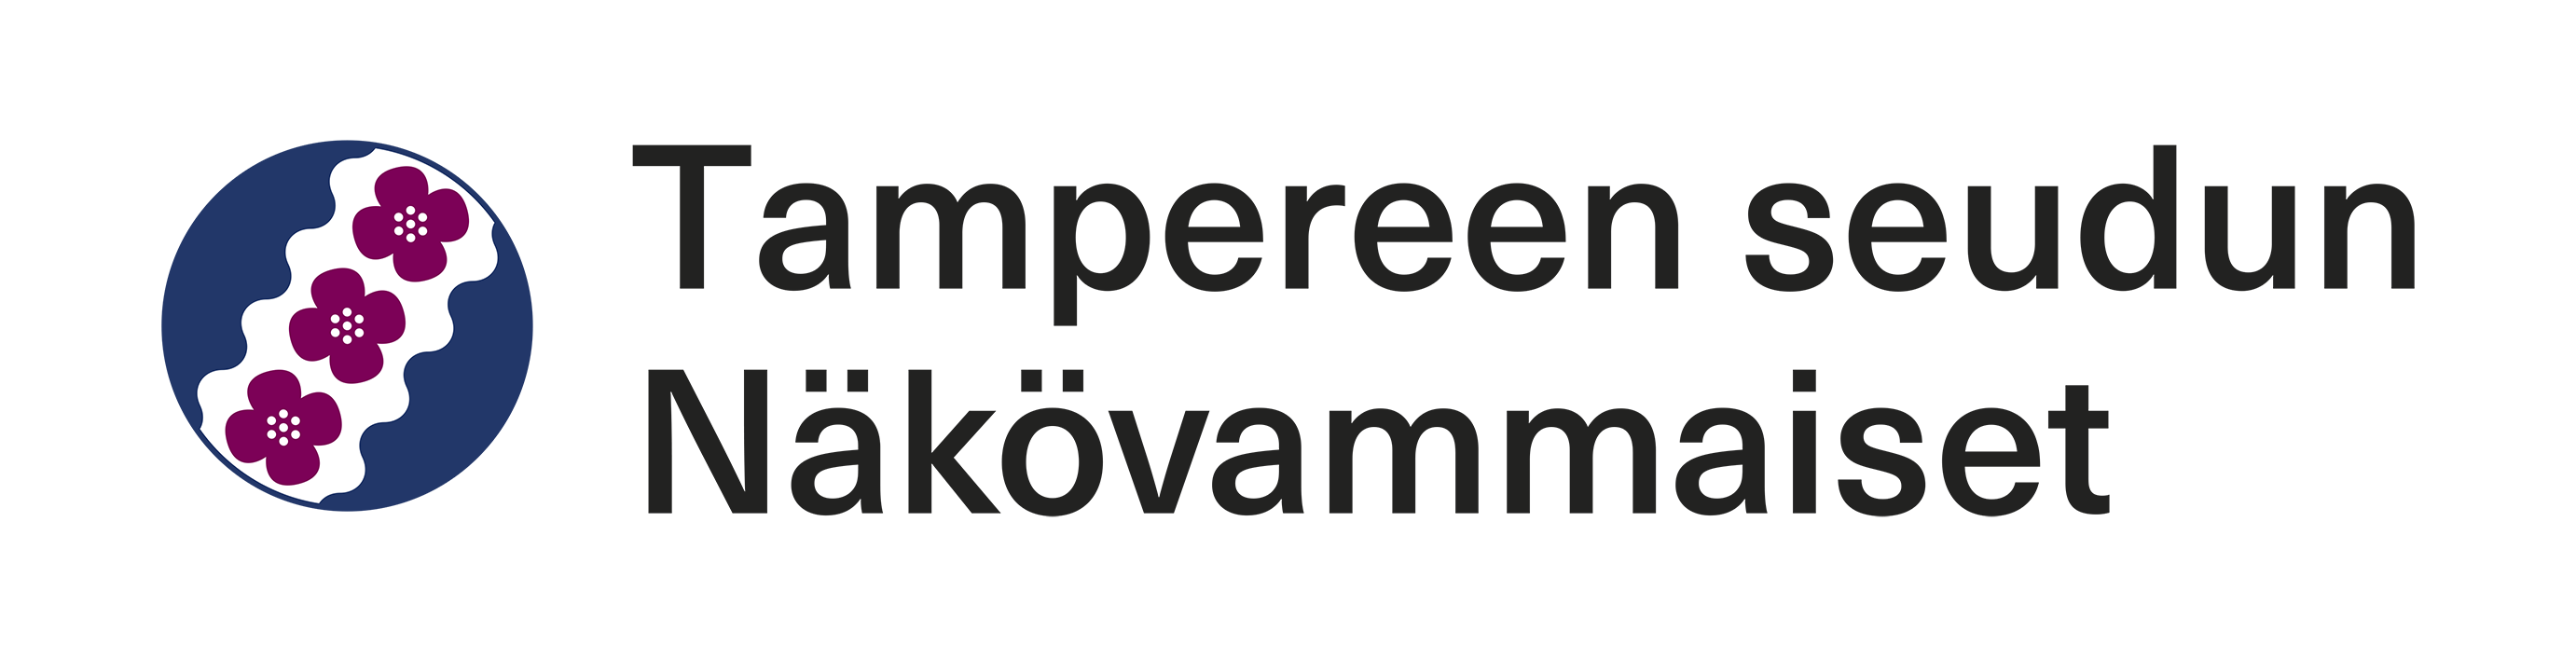 Tampereen seudun Näkövammaisten logo.